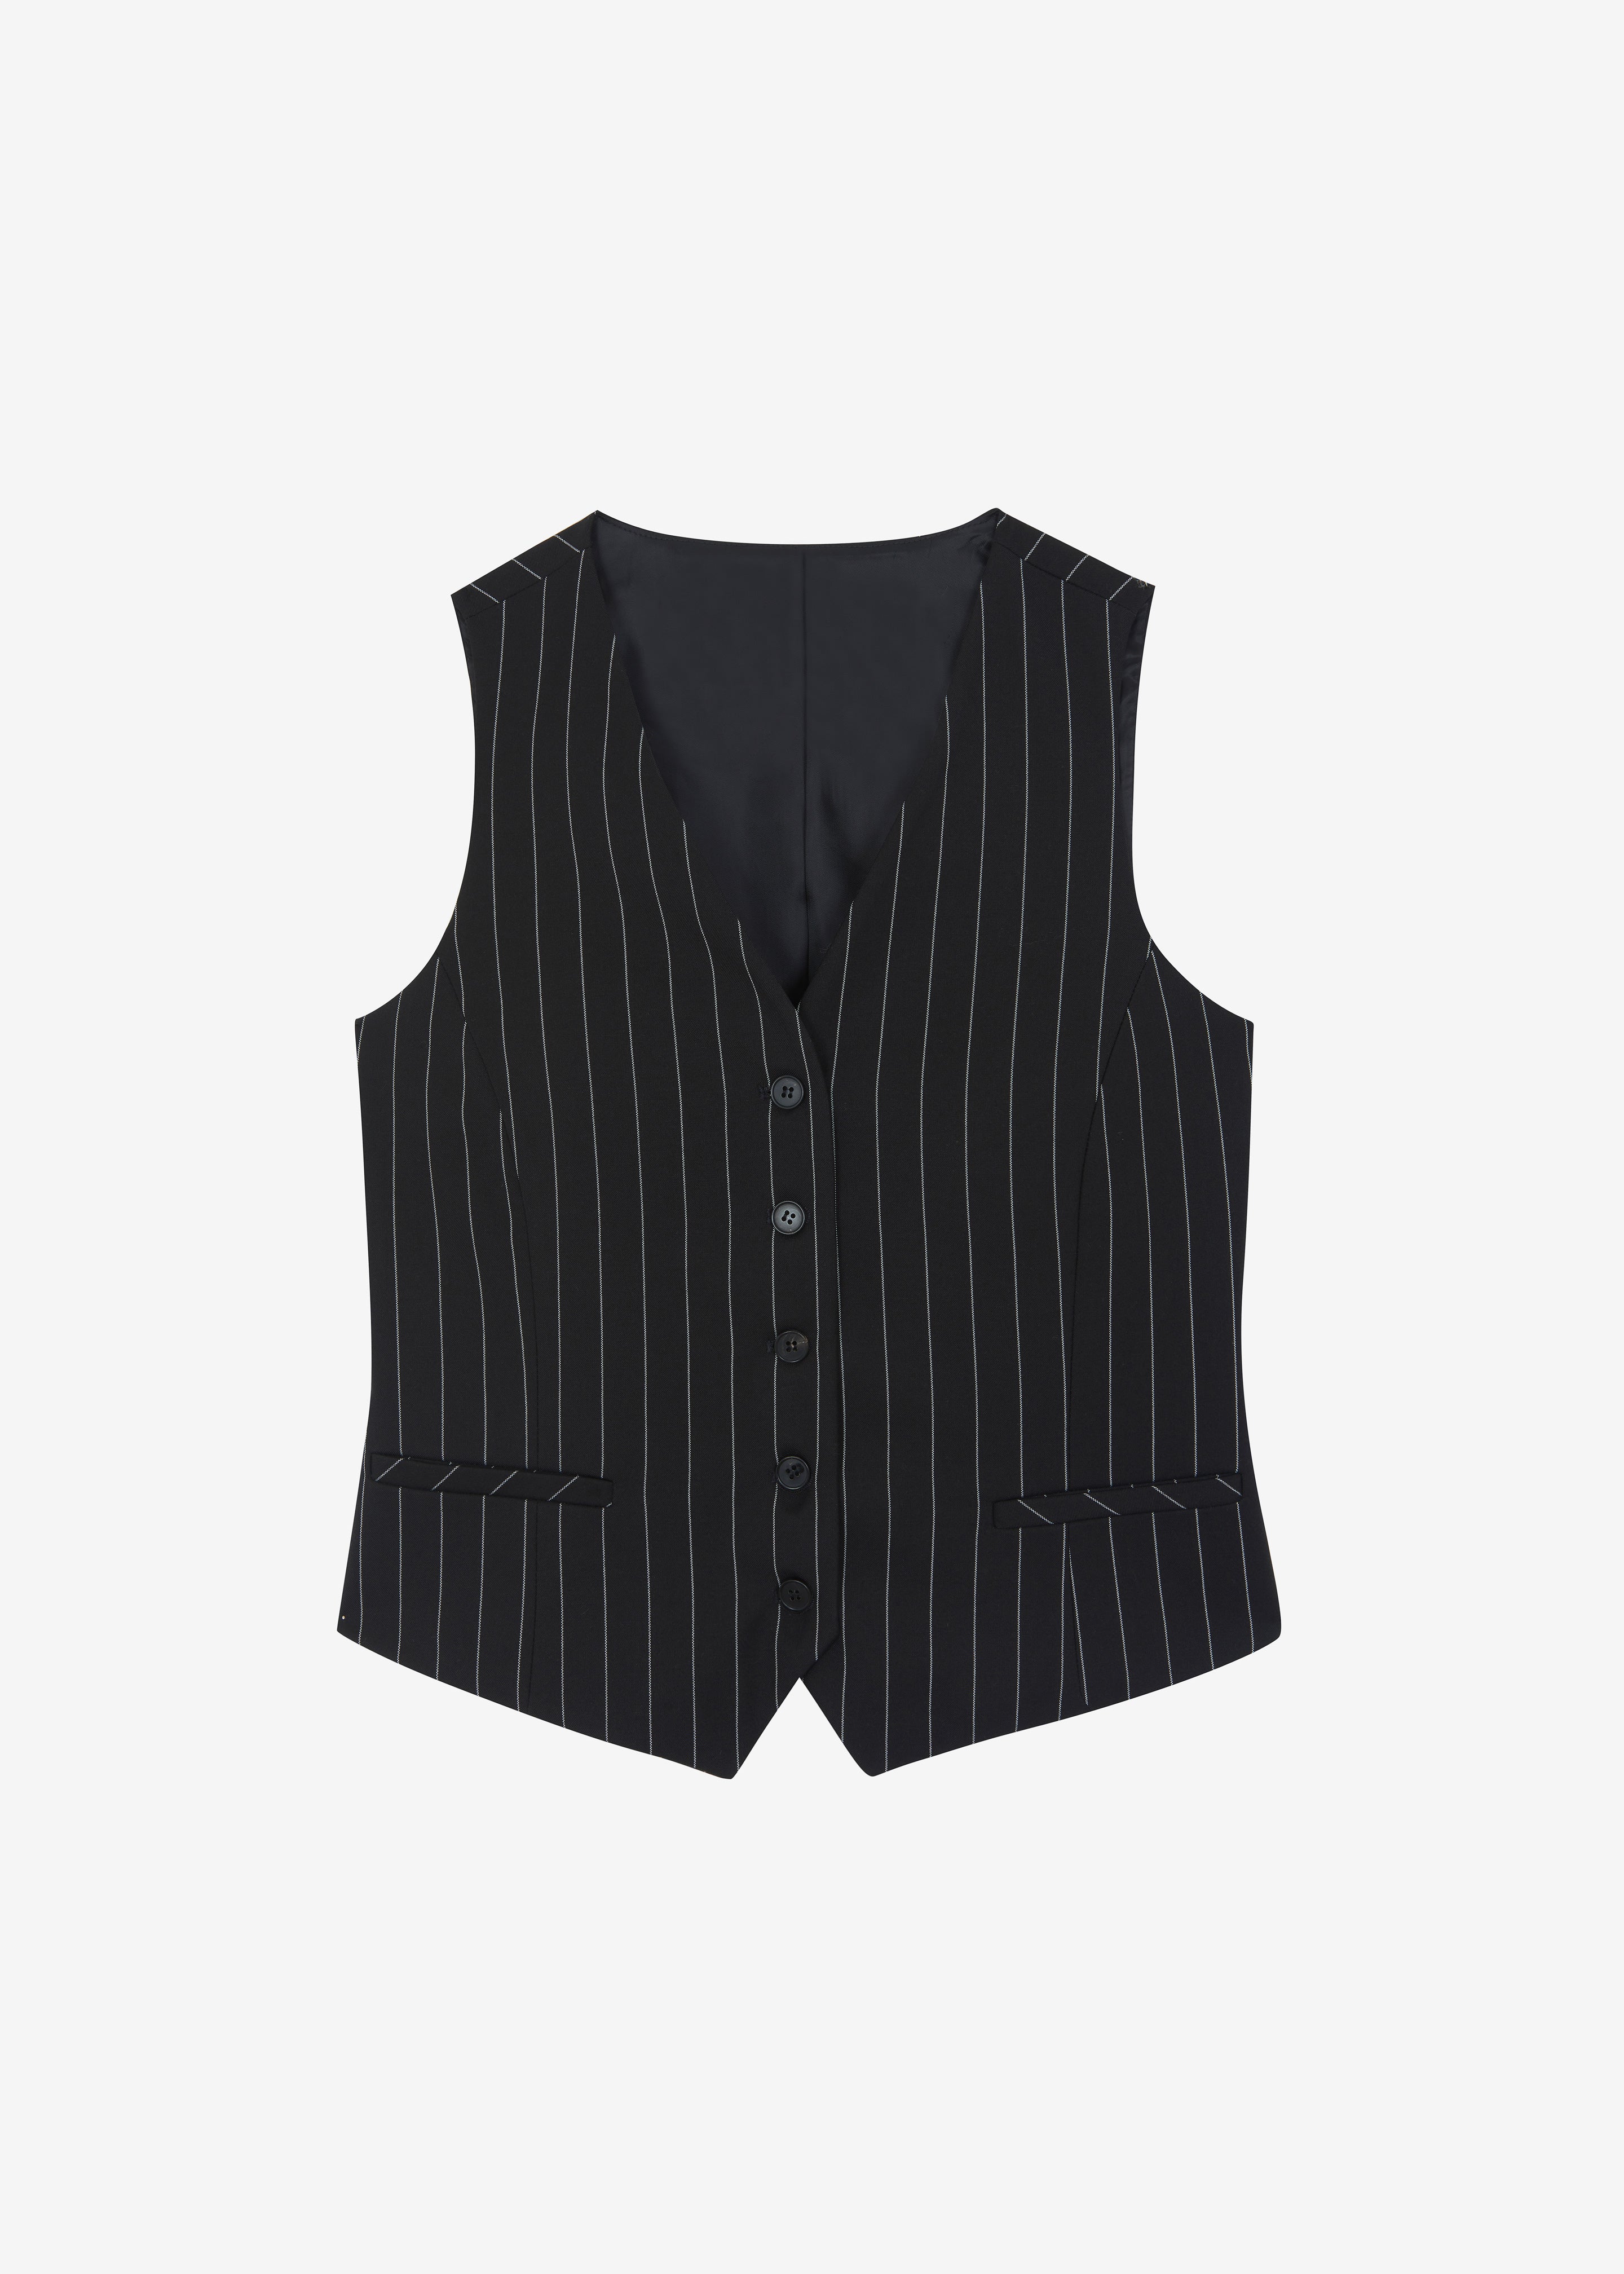 Holland Suit Vest - Black/White Pinstripe - 11